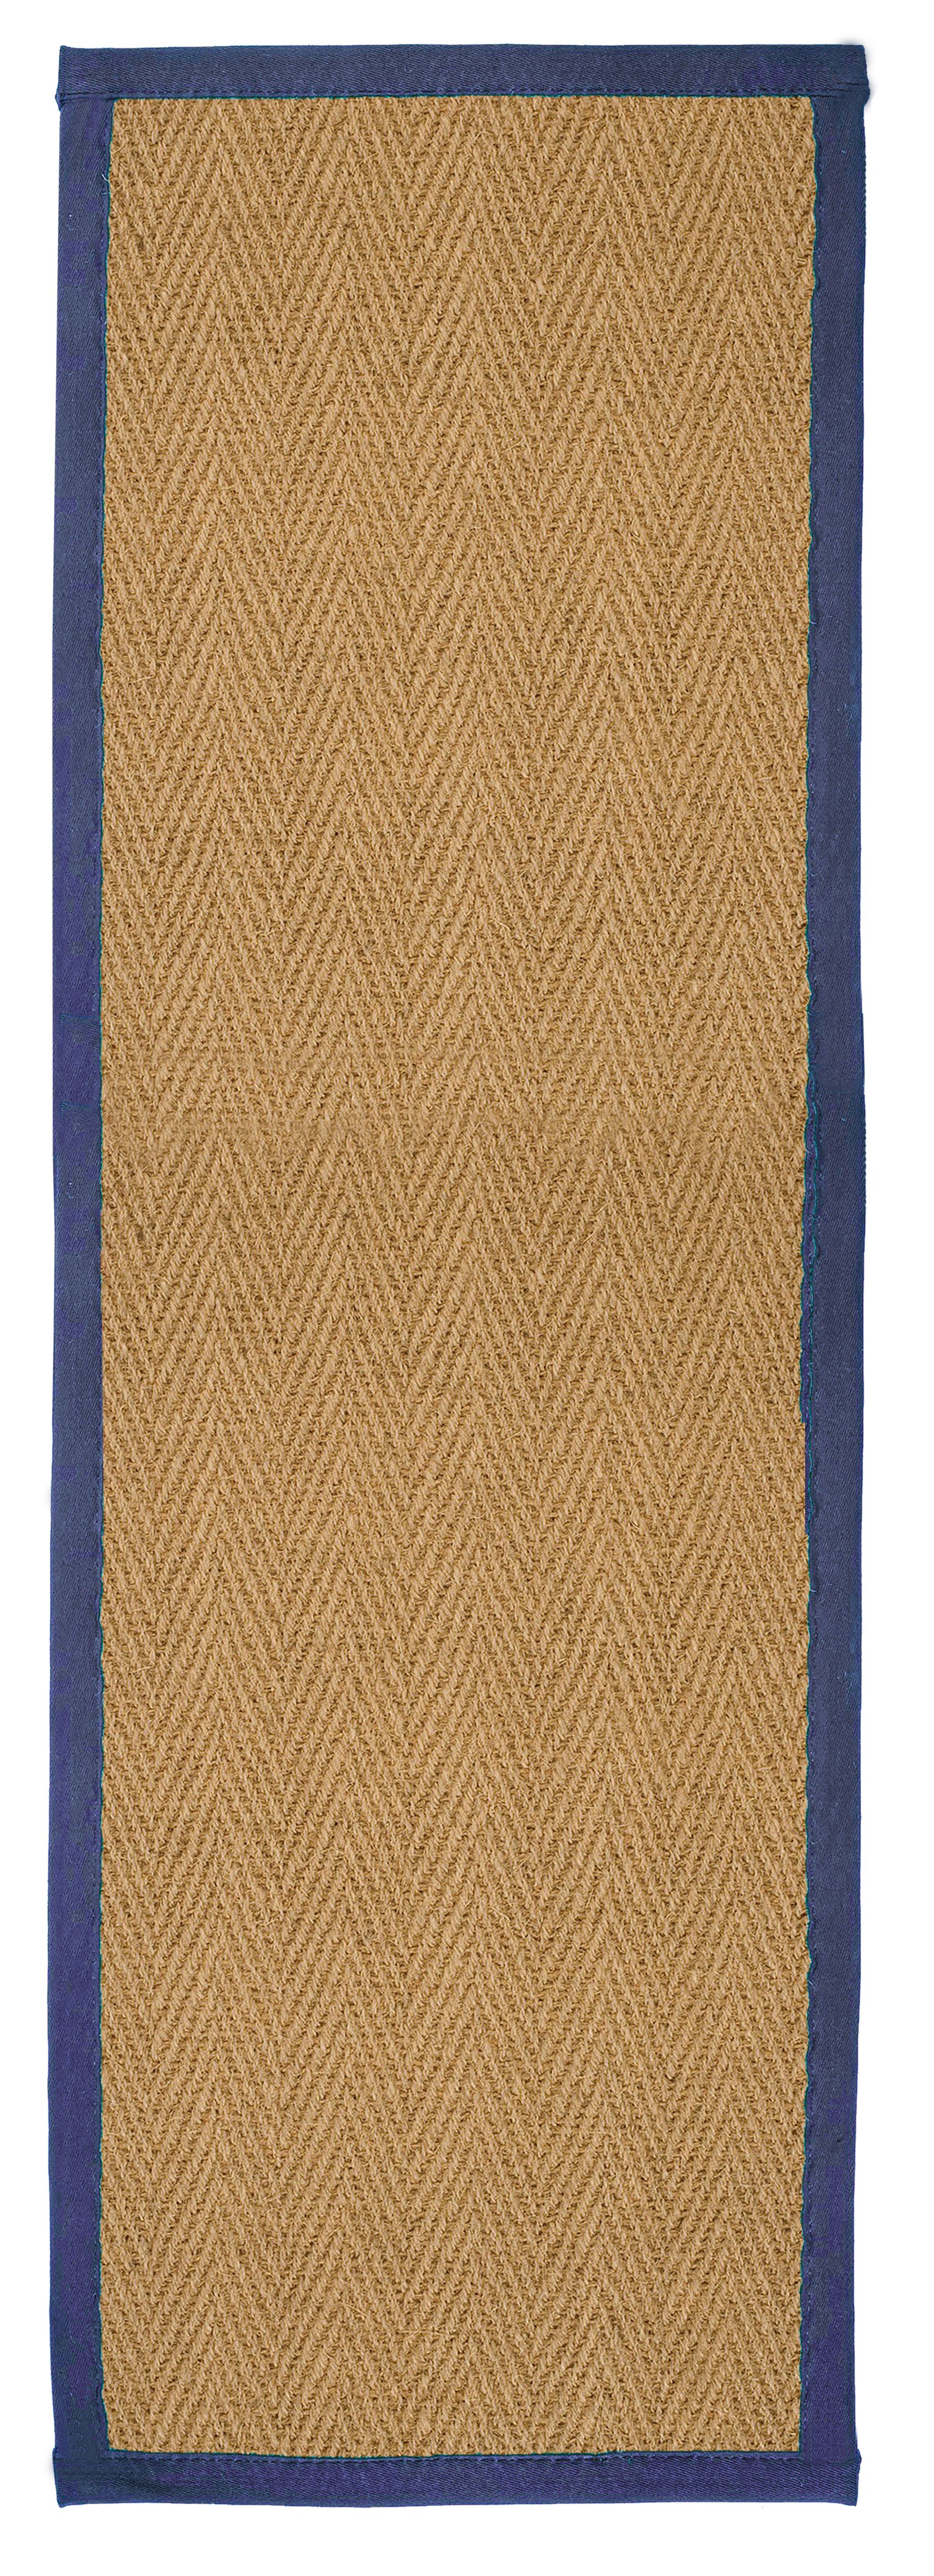 Herringbone weave Brown, blue Rug 180cmx60cm